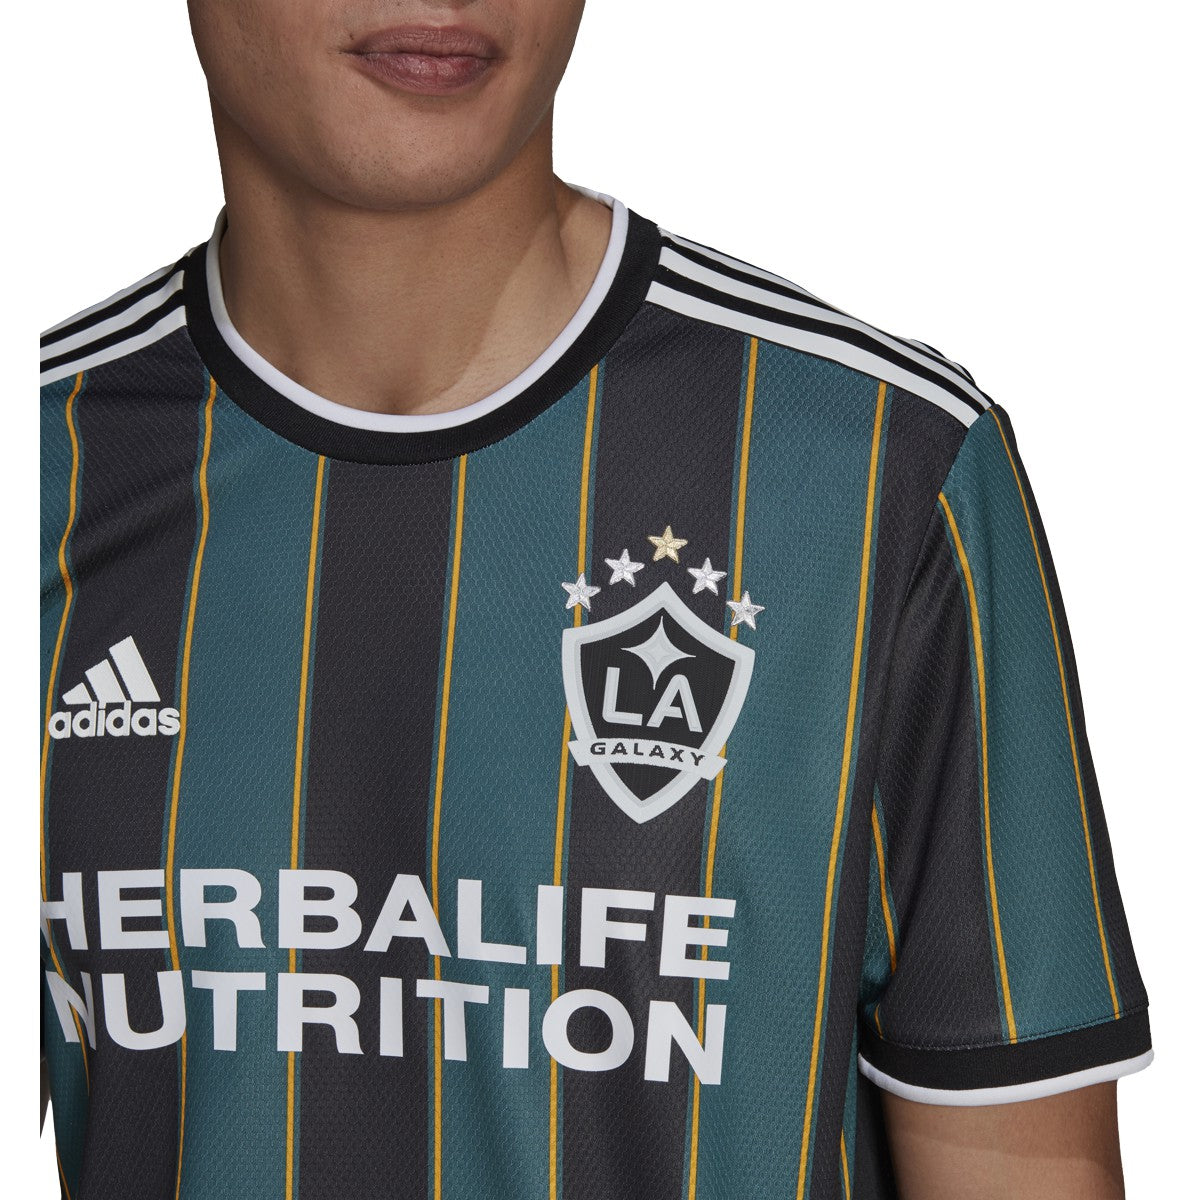 LA Galaxy 2021 adidas Away Jersey - FOOTBALL FASHION